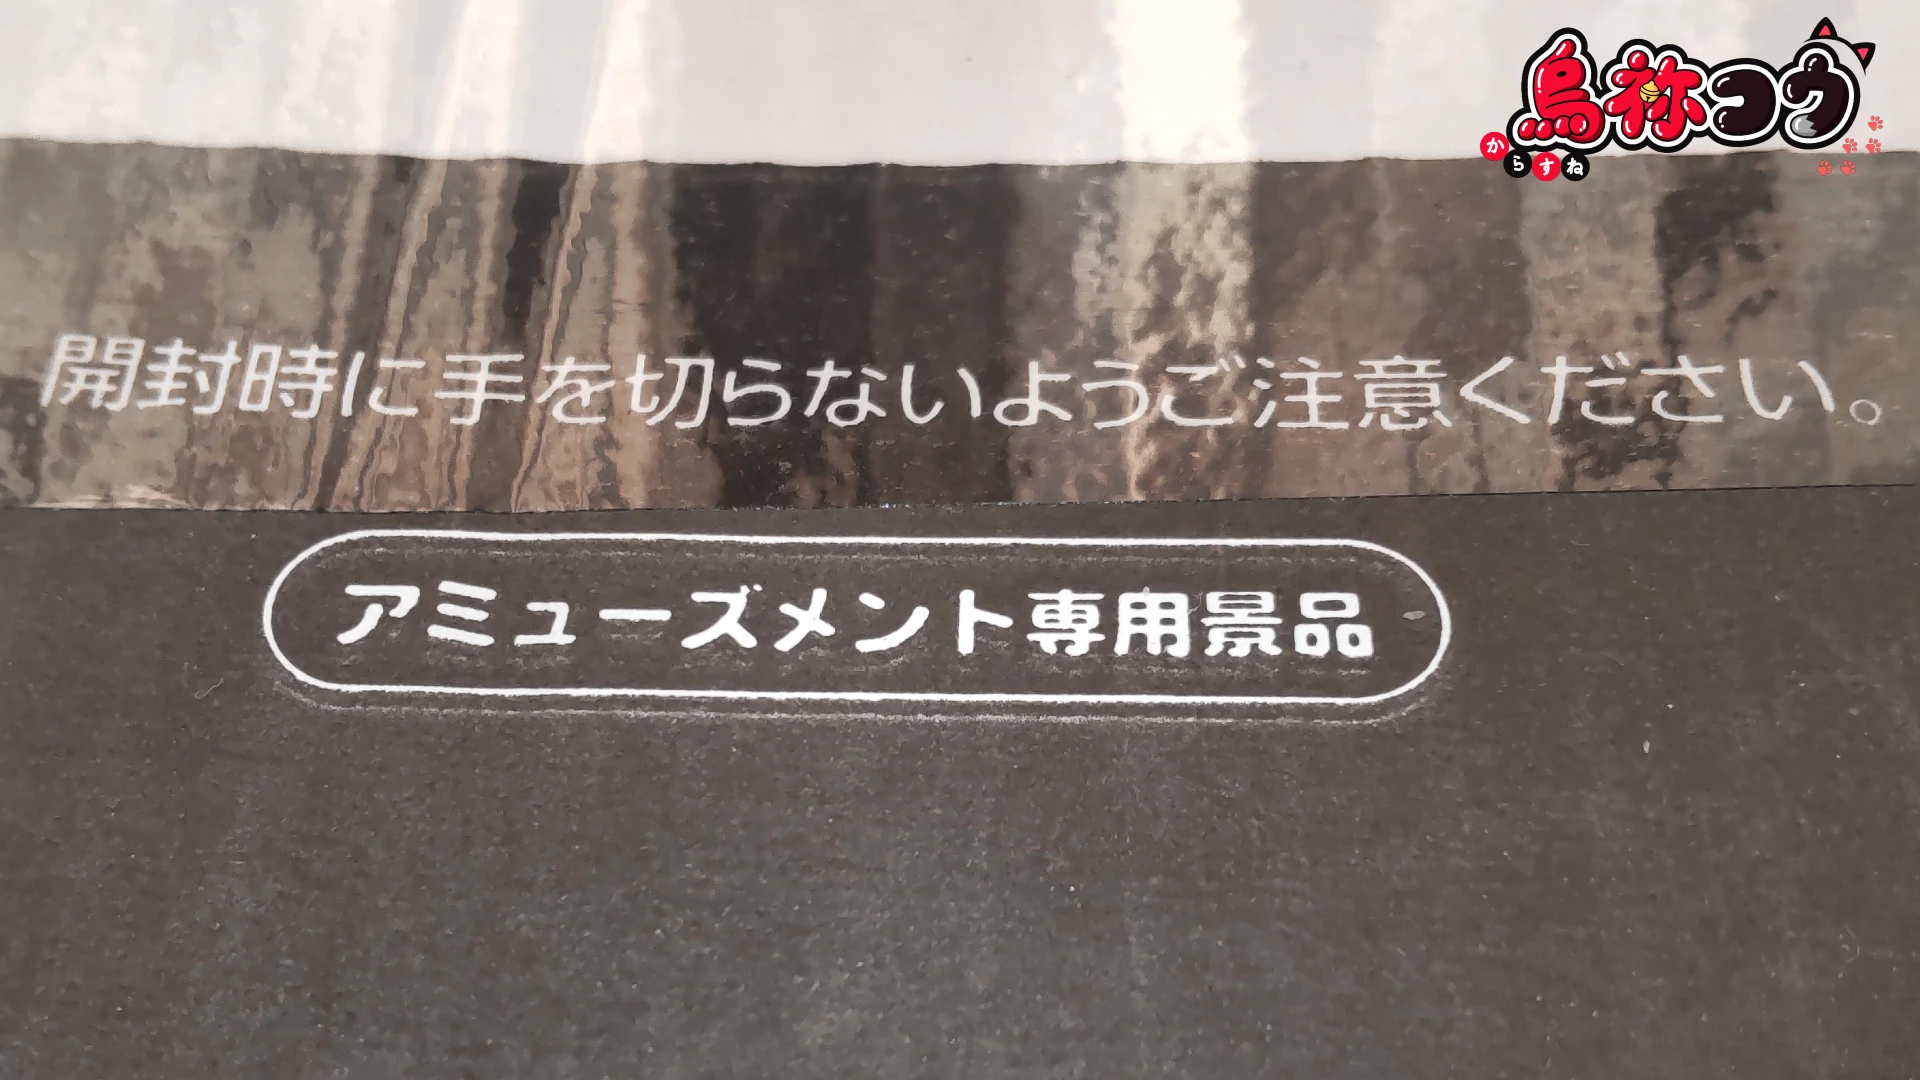 栄光堂ホールディングスの AM ビザポテト 6 袋 BOX に書かれた「アミューズメント専用景品」の表記です